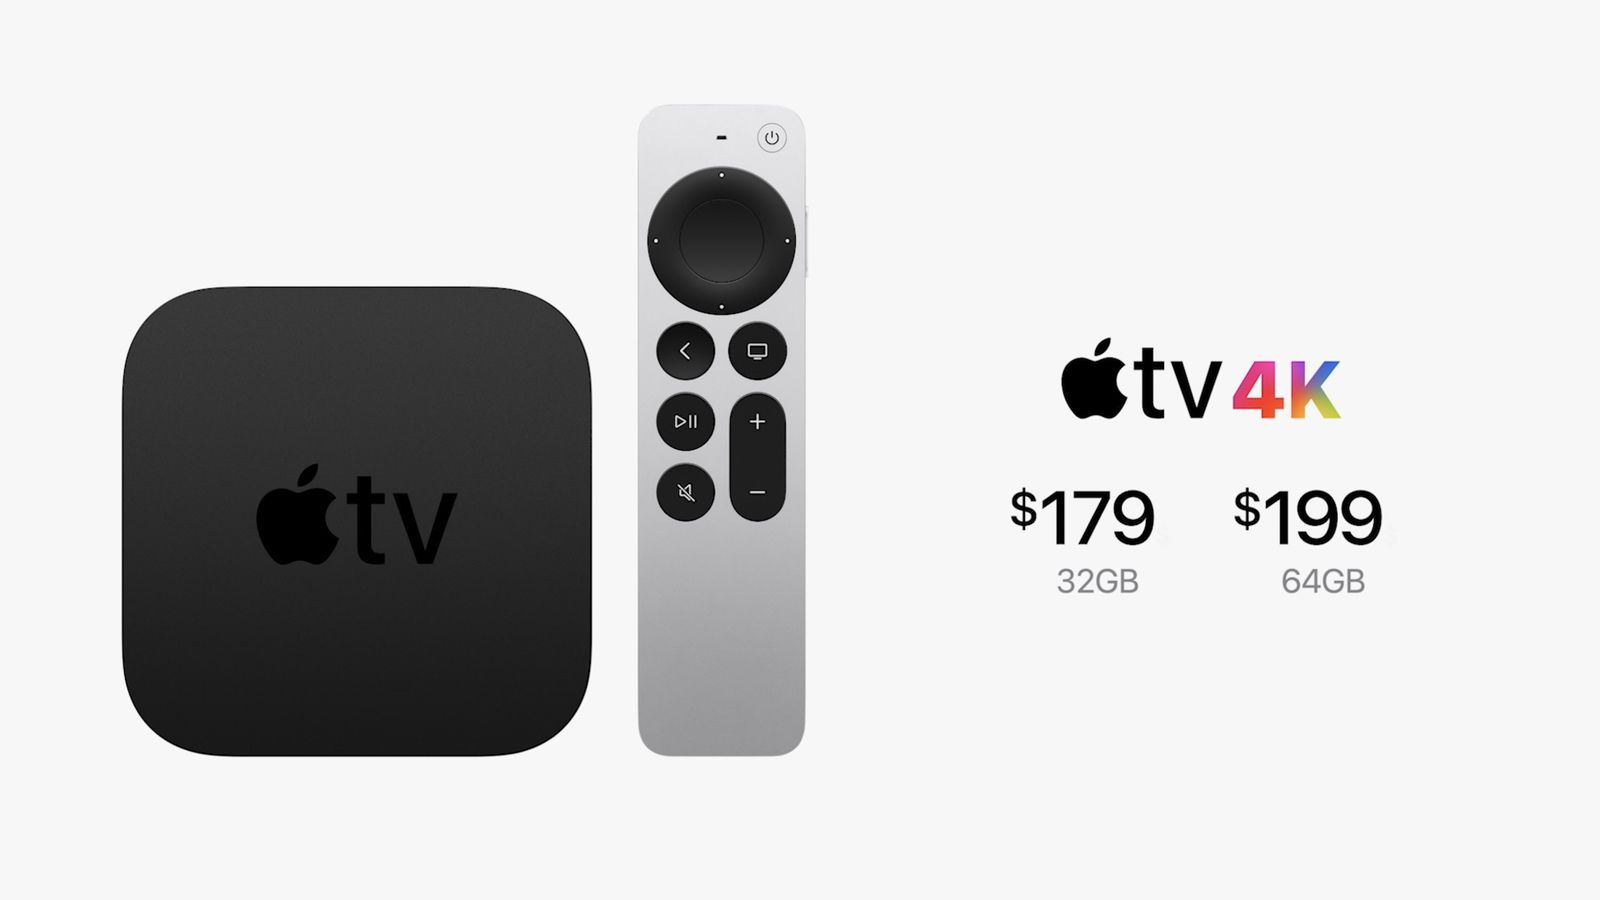 Apple TV 4K: Tận hưởng trải nghiệm giải trí tuyệt vời với Apple TV 4K. Cùng nhau xem các bộ phim và chương trình yêu thích của bạn với độ phân giải siêu nét và âm thanh sống động. Đến với Apple TV 4K, bạn sẽ thực sự được trải nghiệm cuộc sống đúng nghĩa của mình.